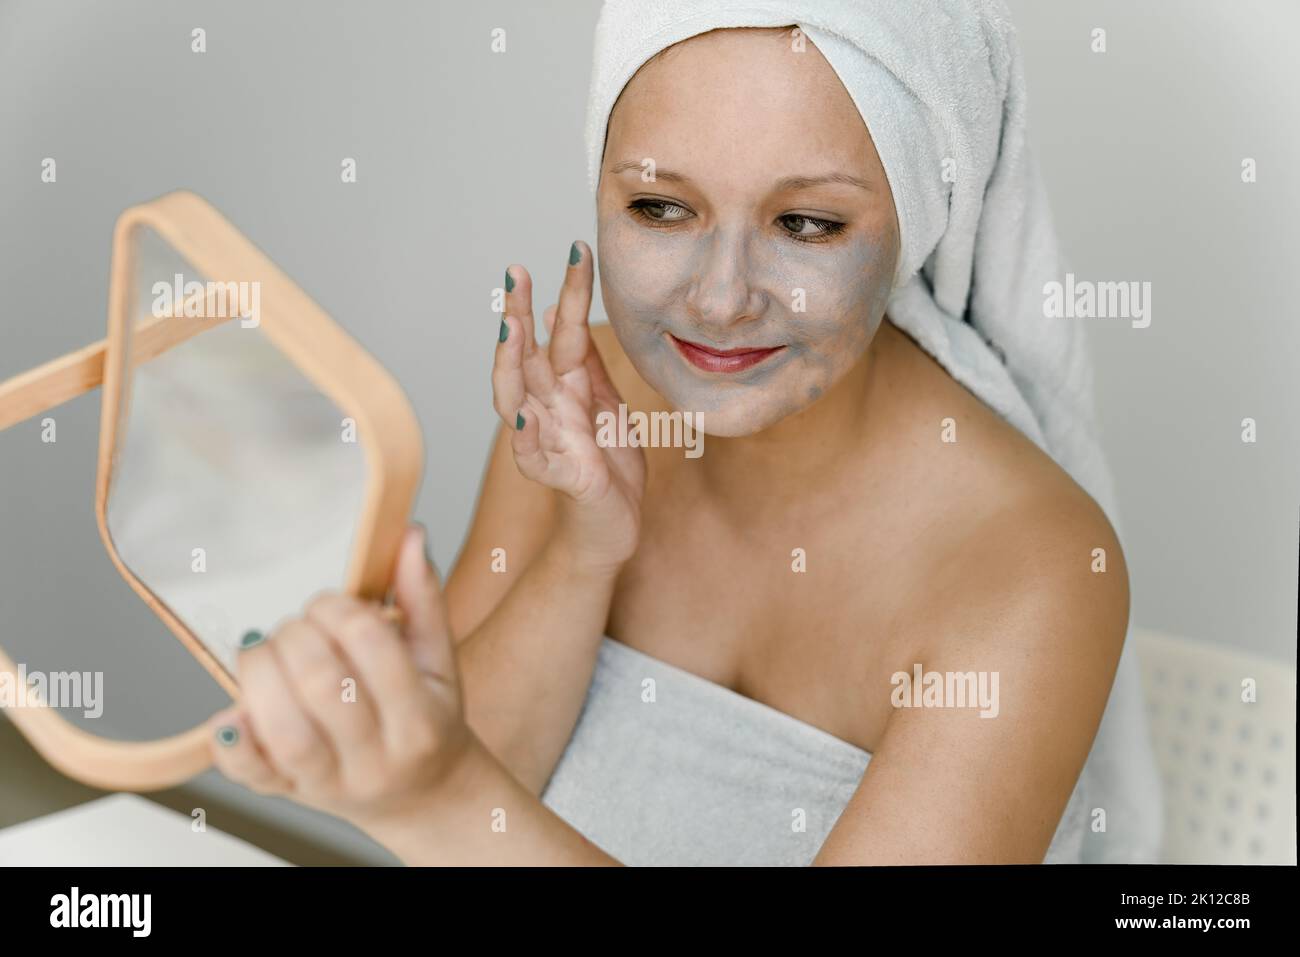 La giovane donna mette l'argilla cosmetica grigia sul suo viso mentre guarda nello specchio, i suoi capelli e il suo corpo sono avvolti in asciugamano. Primo piano Foto Stock